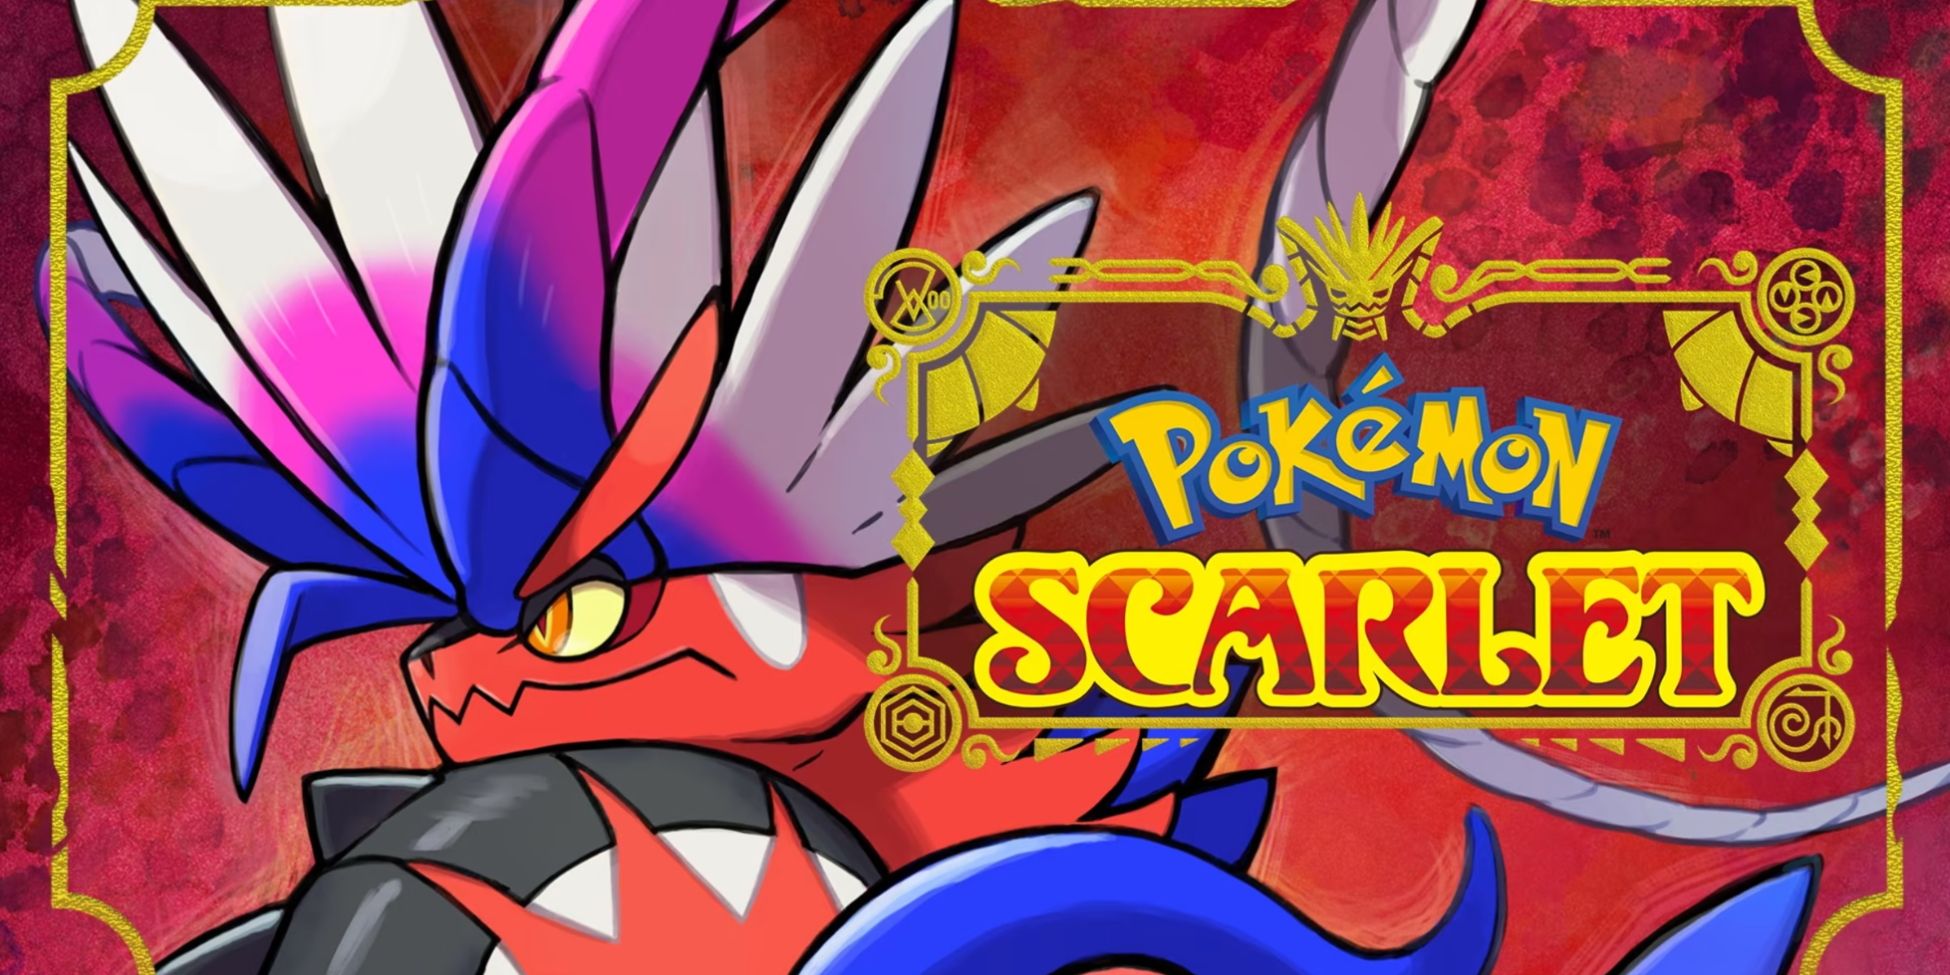 Cover art of Koraidon next to the Pokémon Scarlet logo.